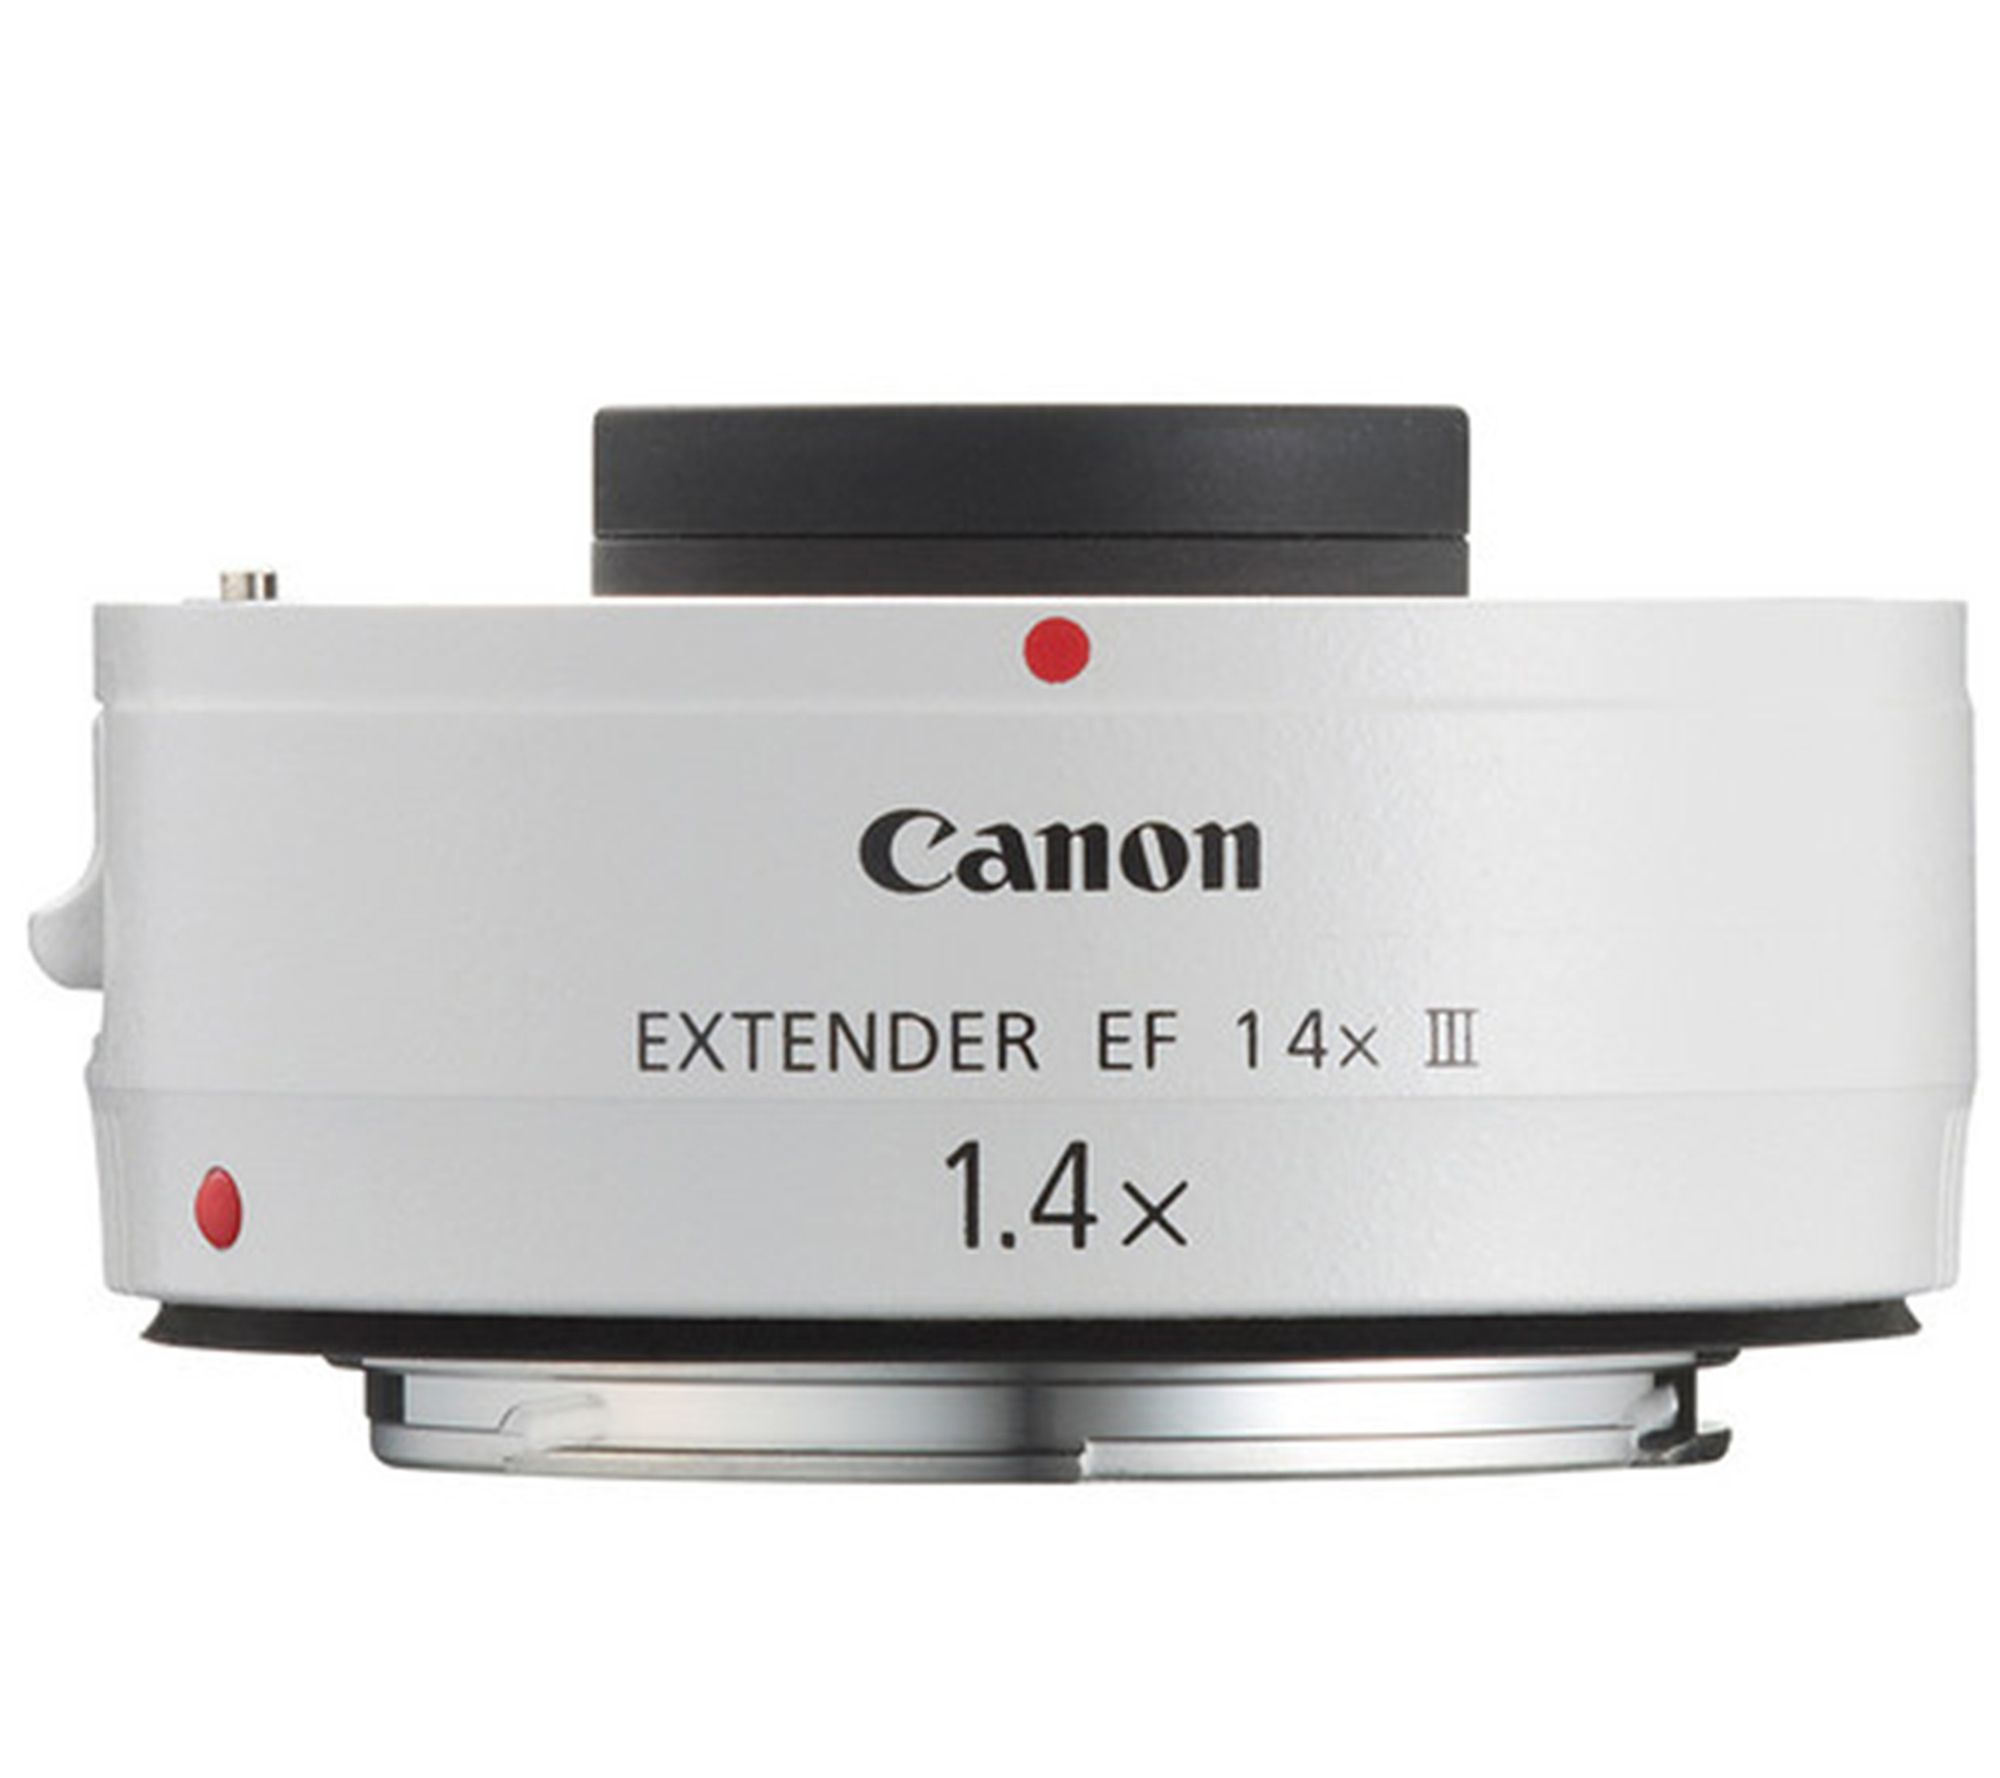 Canon Extender EF 1.4X III - QVC.com